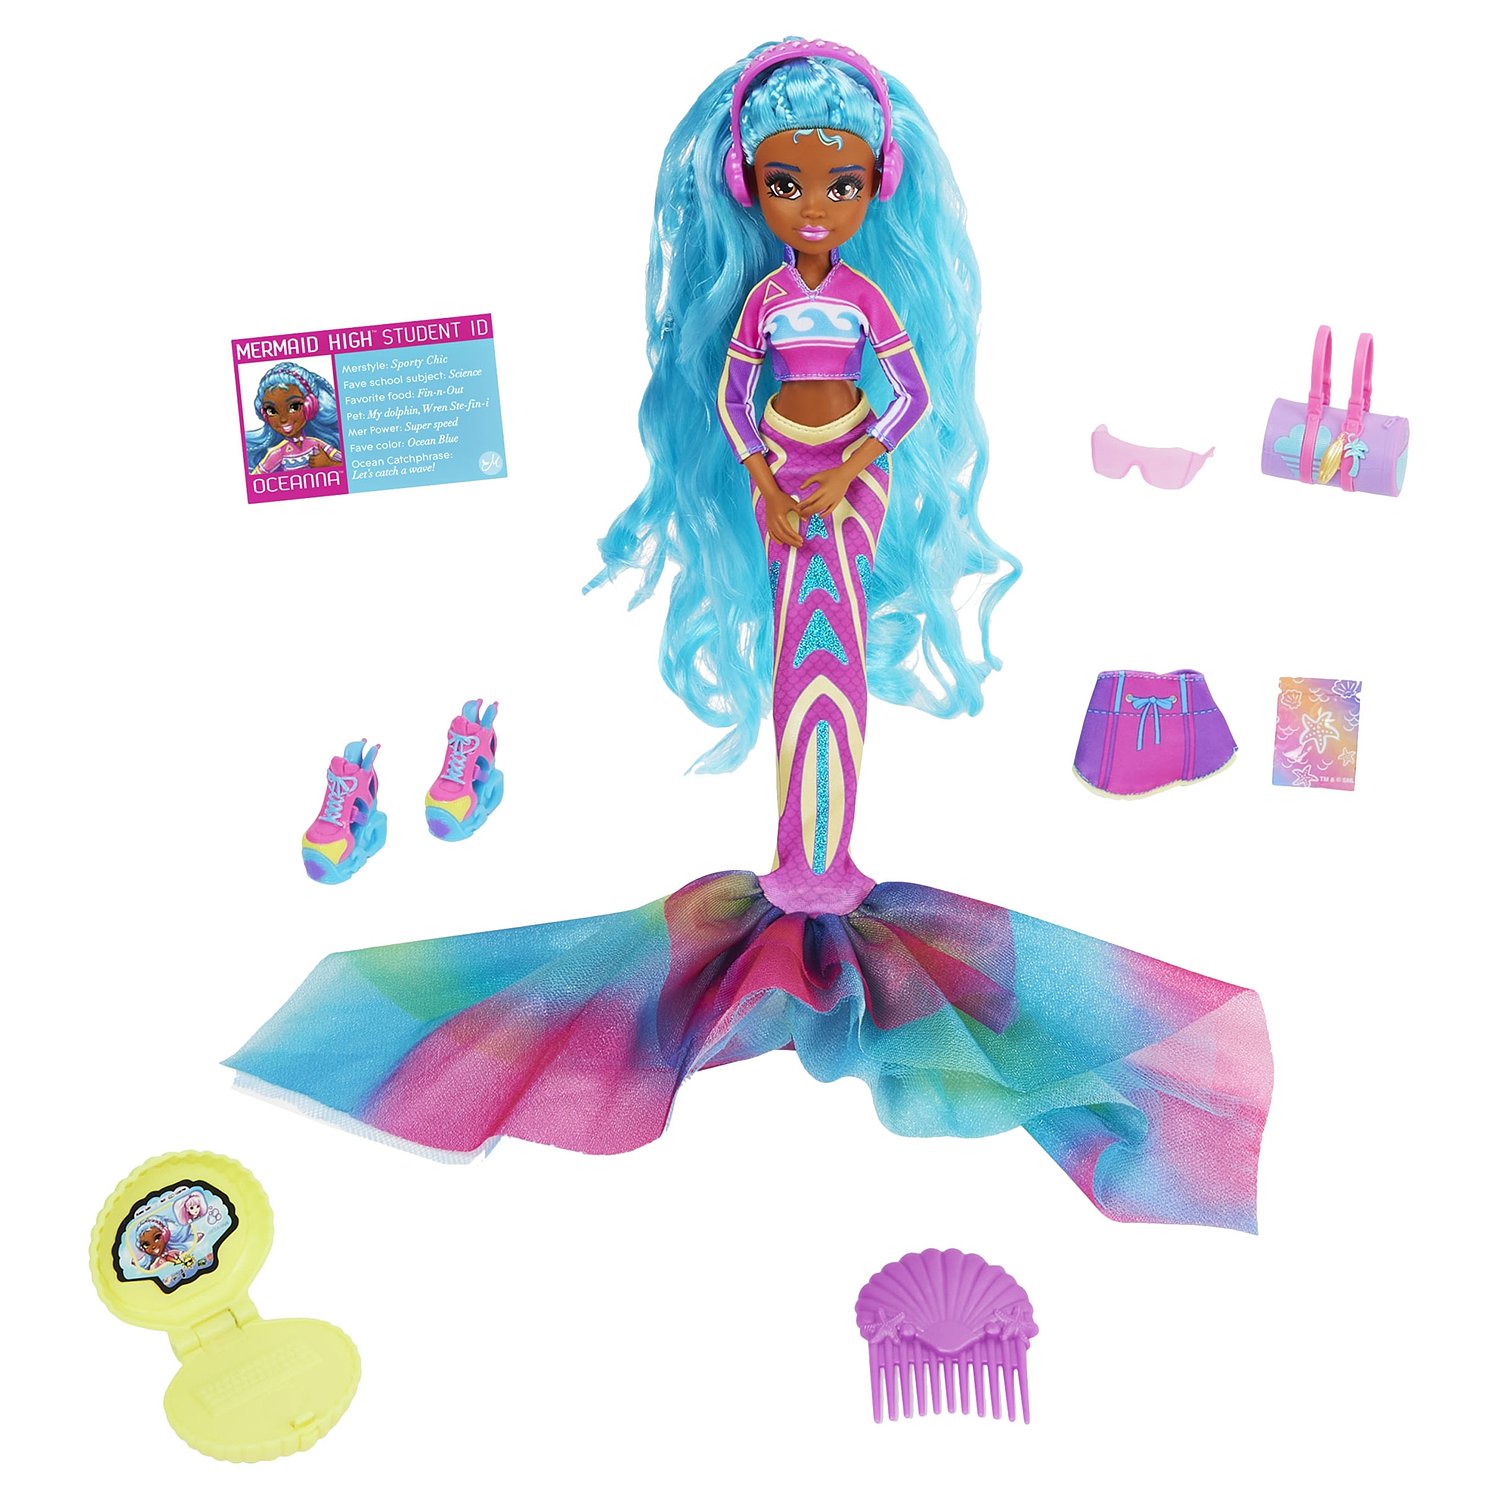 Кукла Mermaid High Русалка Делюкс Океанна 6062288 модная одежда своими руками сшей наряд за 1 вечер